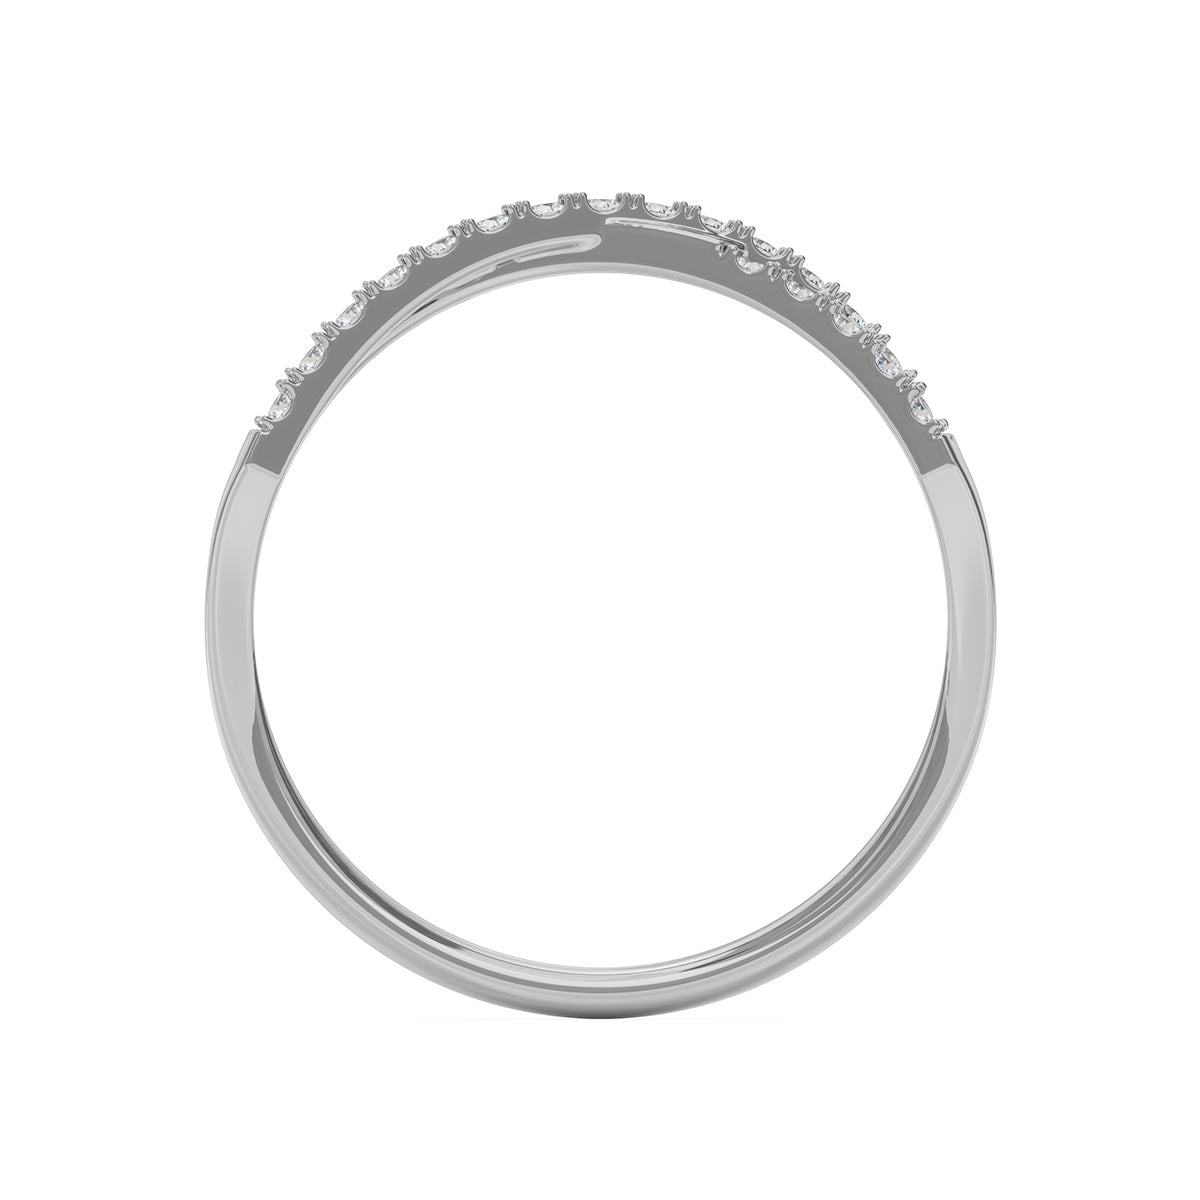 X Shaped Pavé Ring